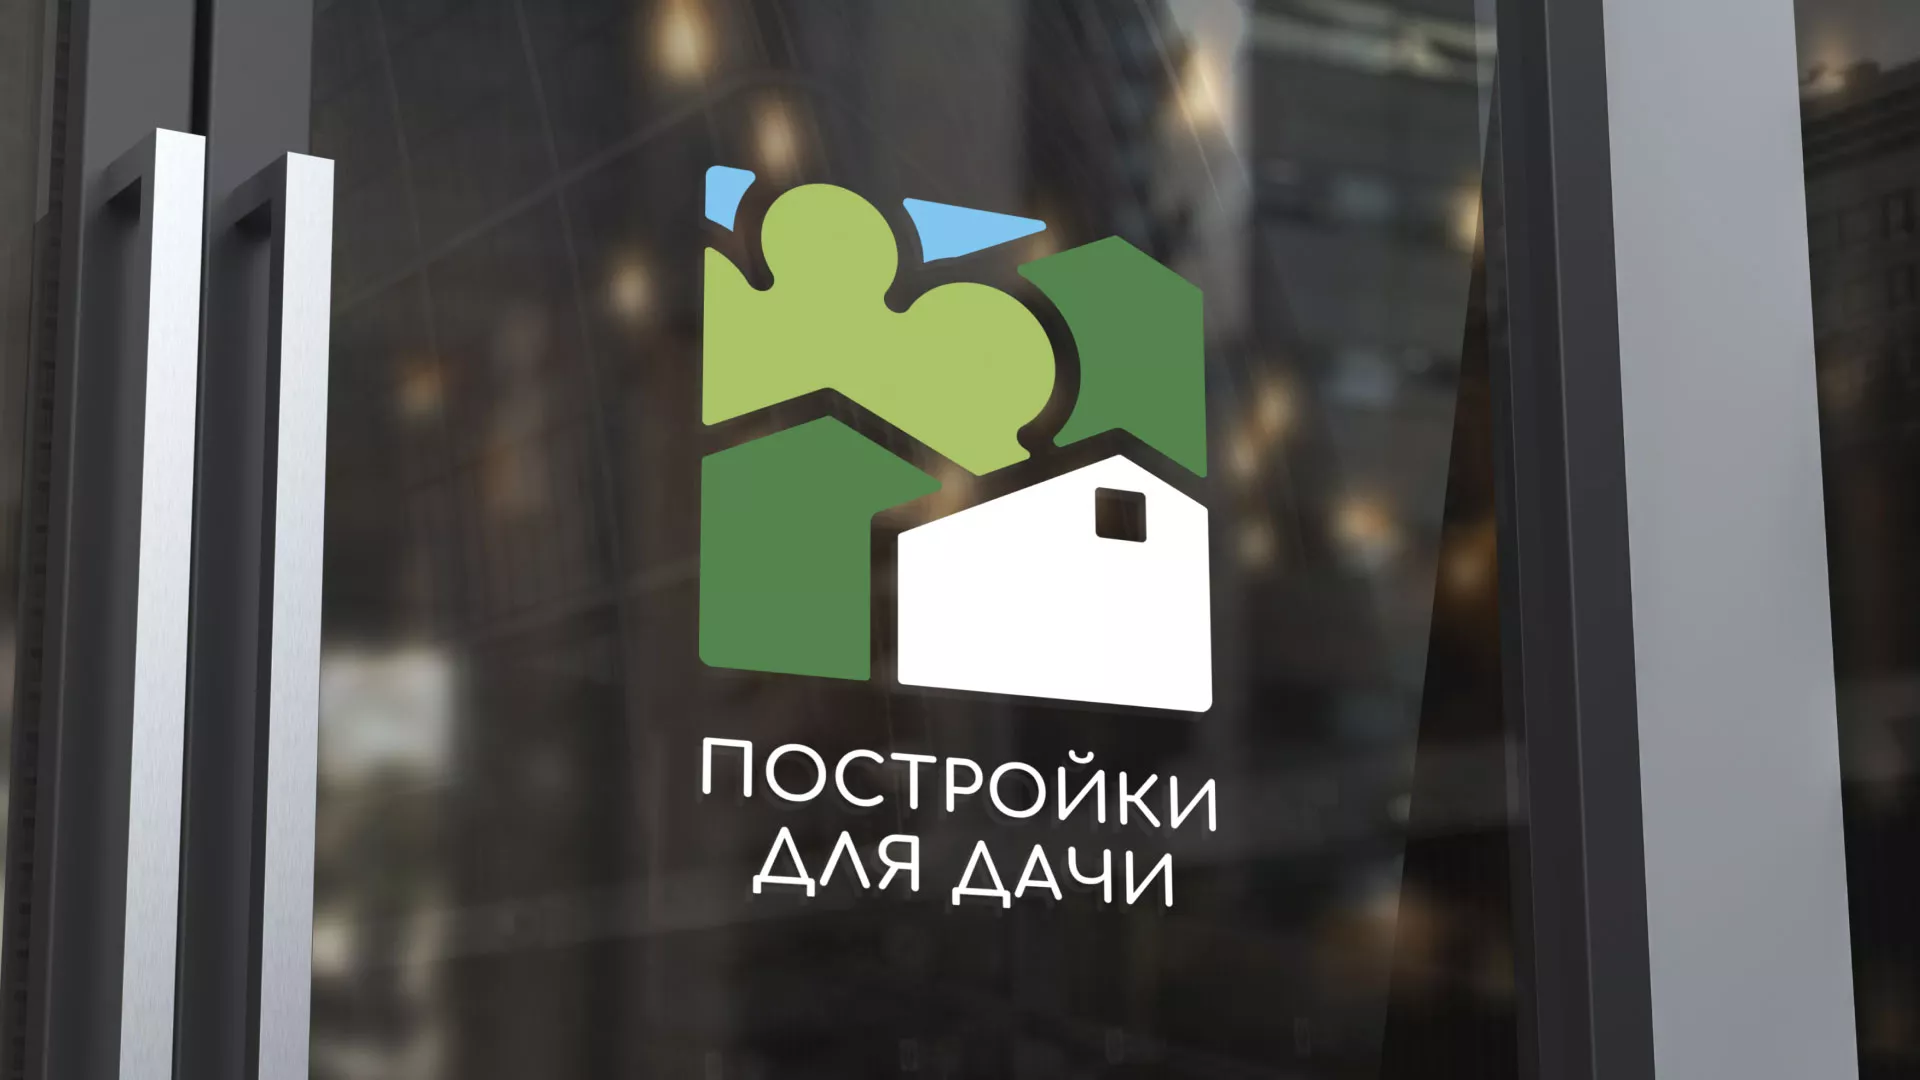 Разработка логотипа в Фролово для компании «Постройки для дачи»